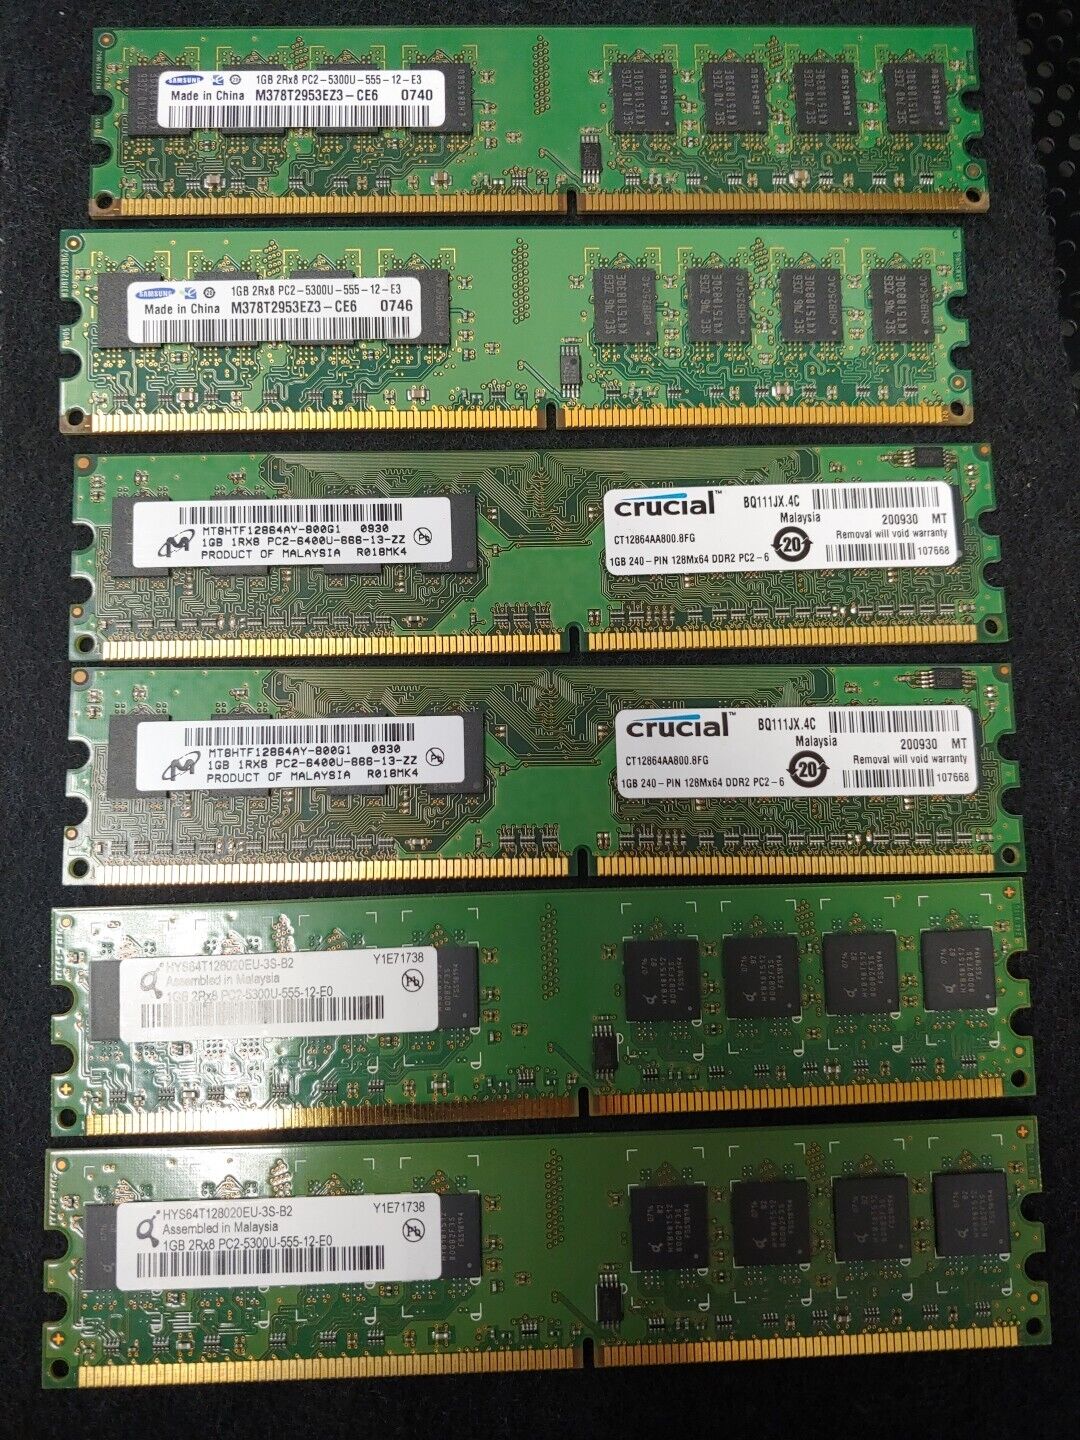 Samsung Micron Qimonda DDR2 1GB Mixed Lot (6×) 2Rx8 - 1Rx8 RAM PC2-6400U /5300U